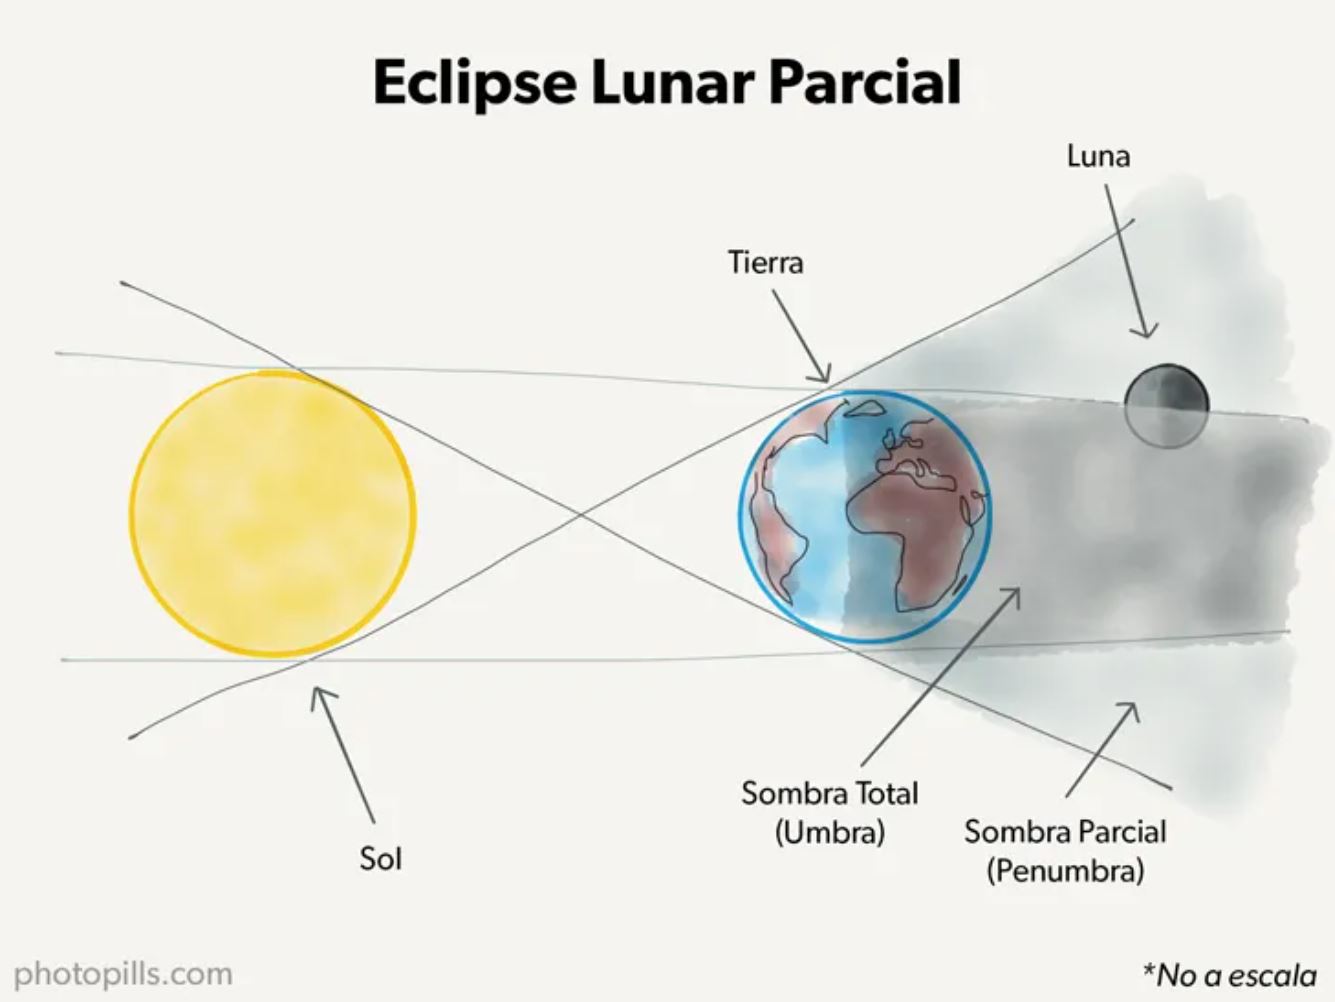 Eclipse lunar parcial (Photopills)